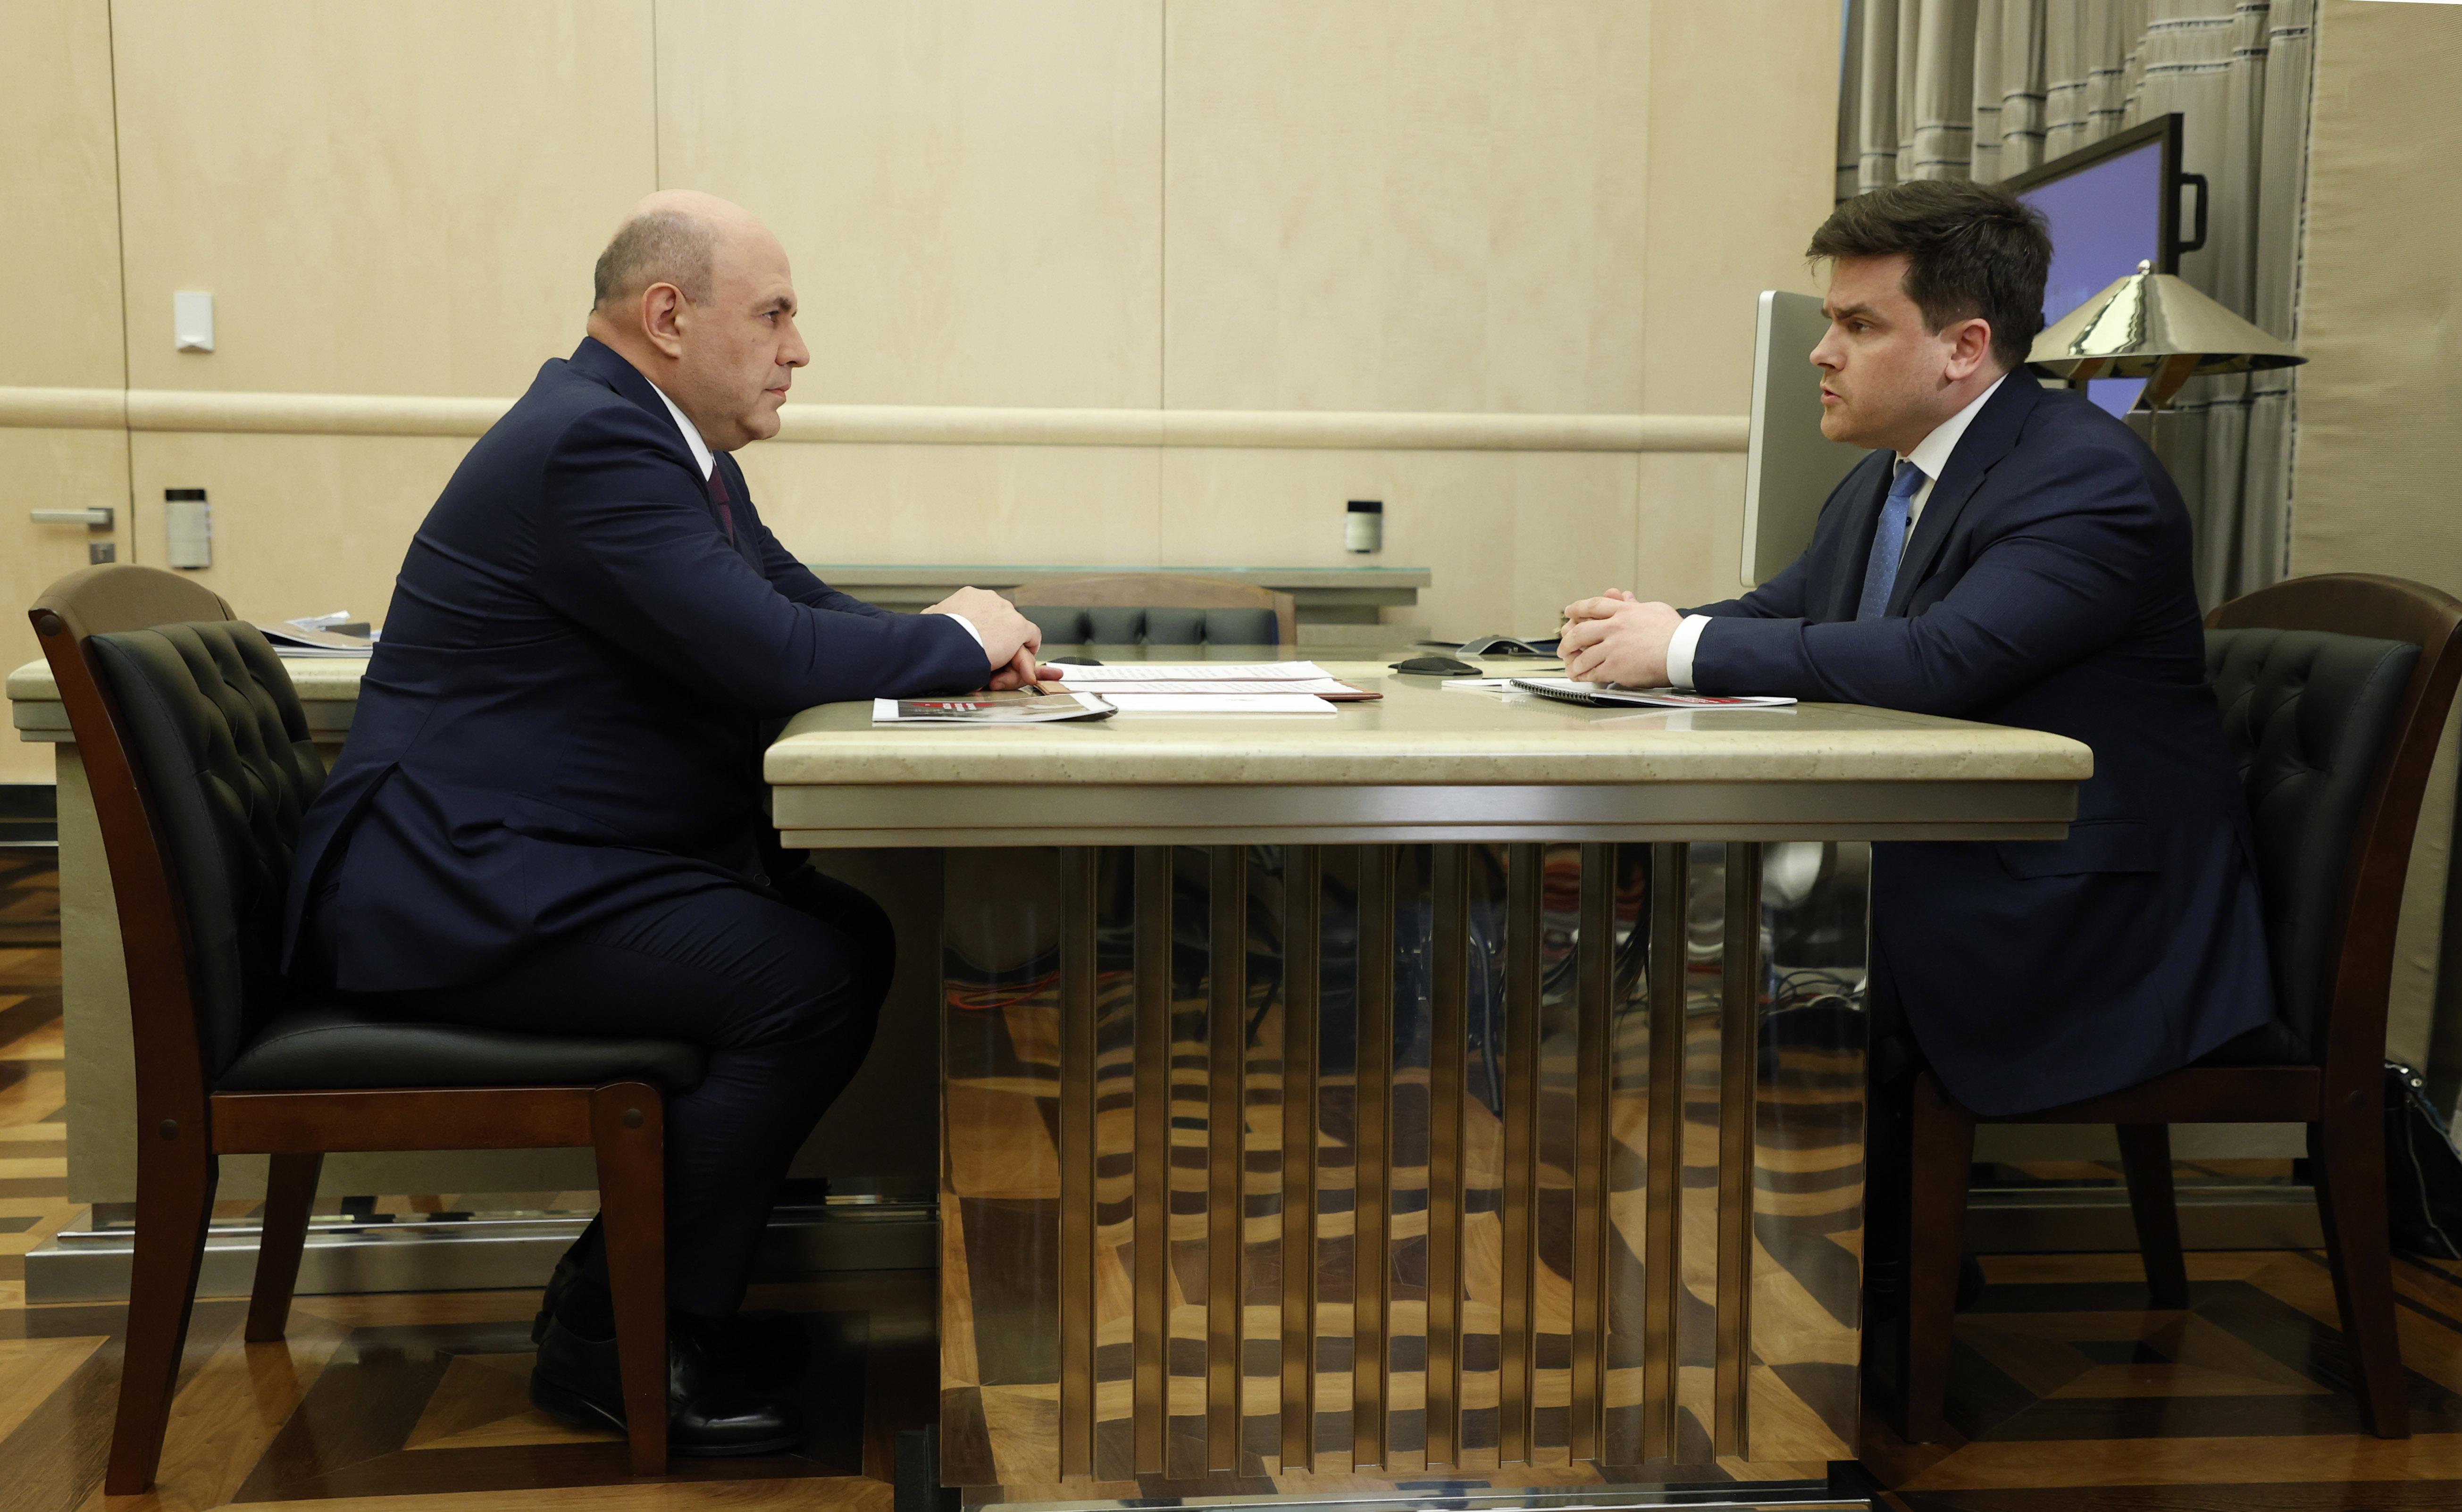 Руководитель Росаккредитации доложил Михаилу Мишустину о трансформации работы ведомства в условиях внешнего давления